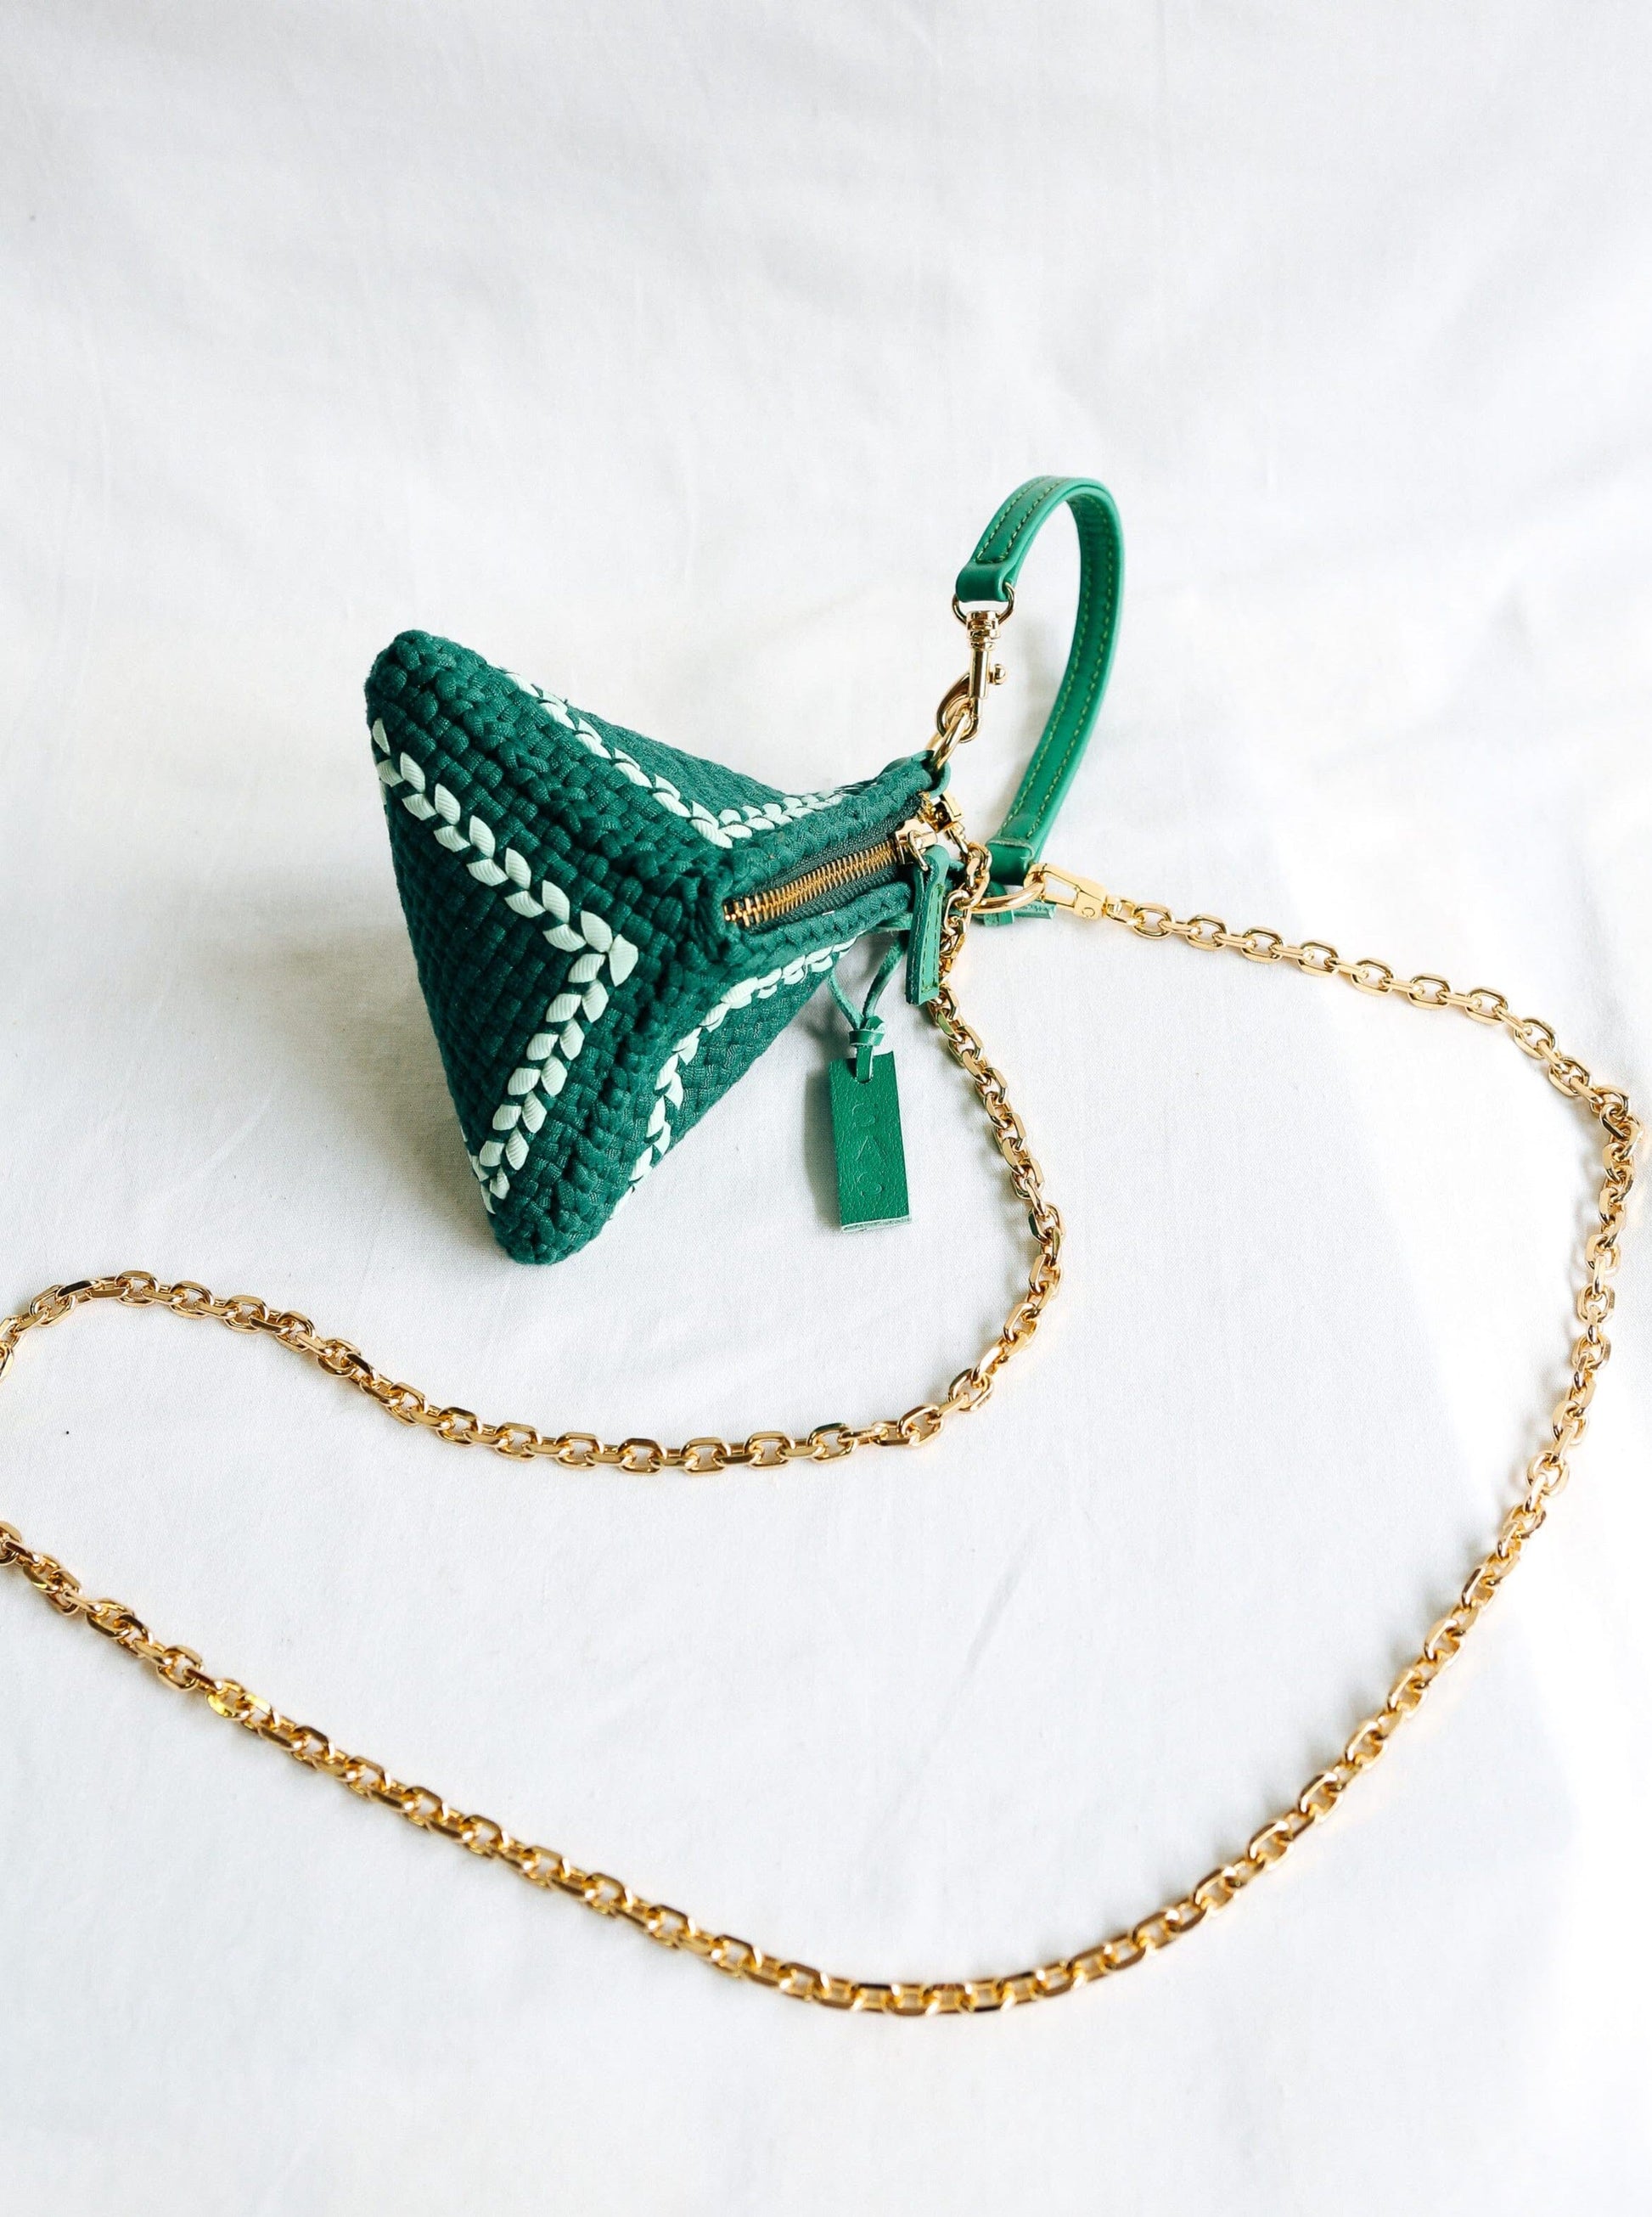 Pusô Micro Emerald & Mint Fashion Rags2Riches